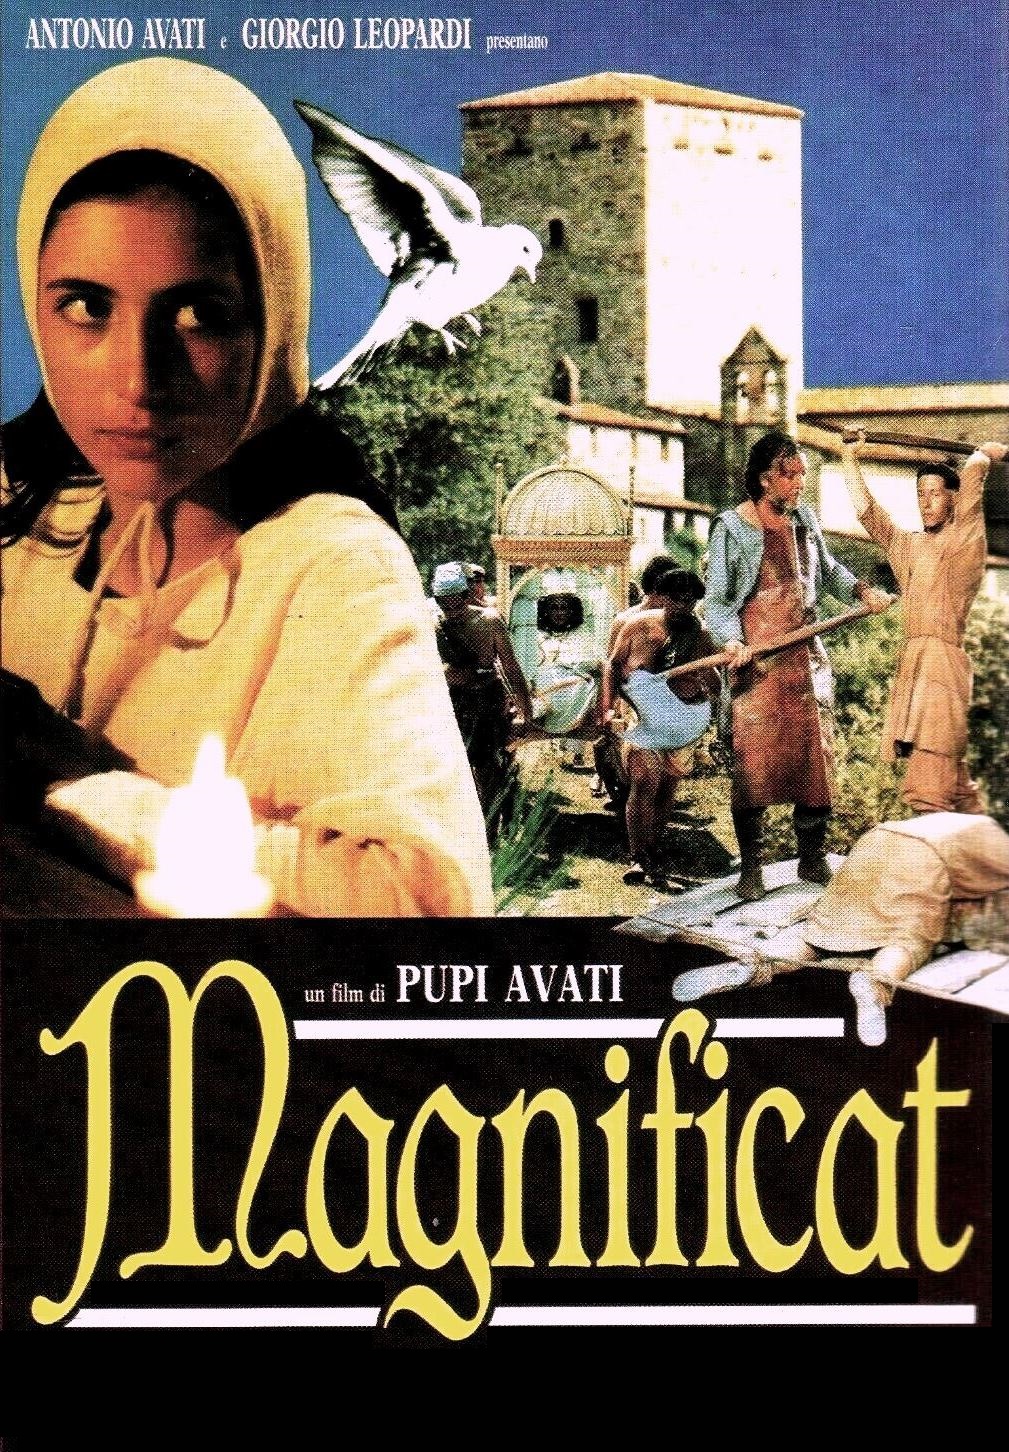 Magnificat (1993)